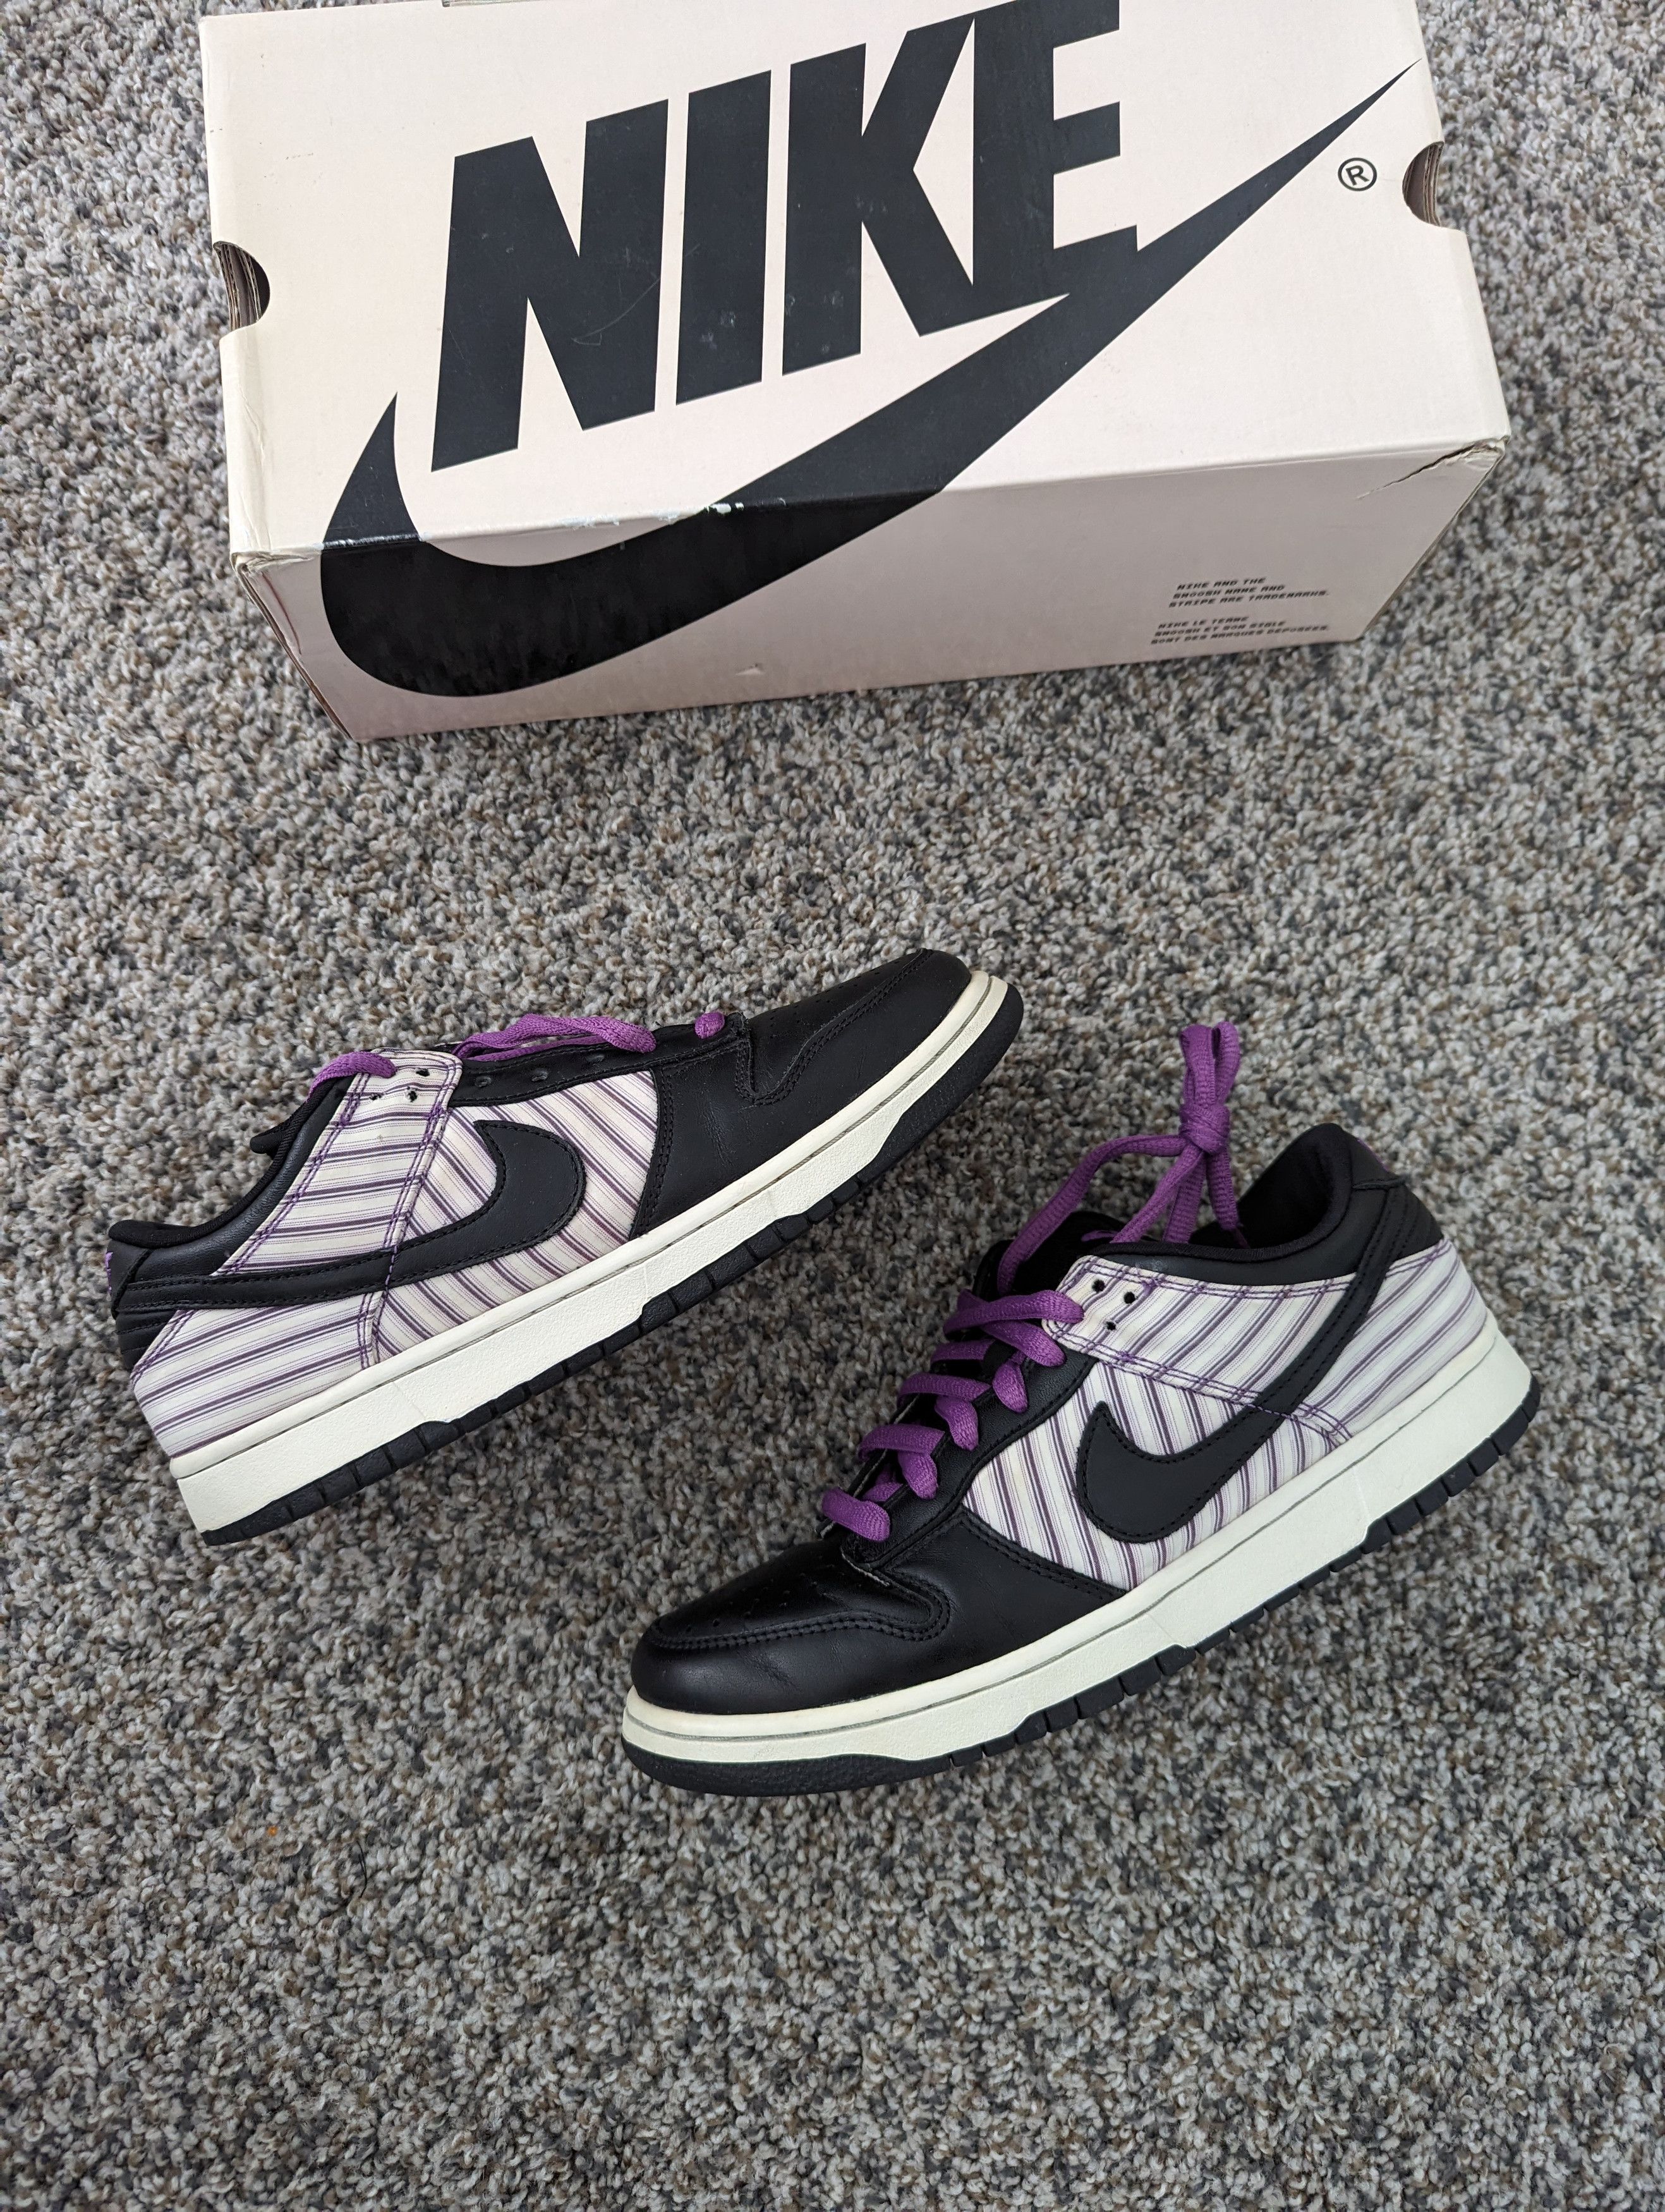 Nike Nike SB Dunk Low Pro Purple Avenger | Grailed